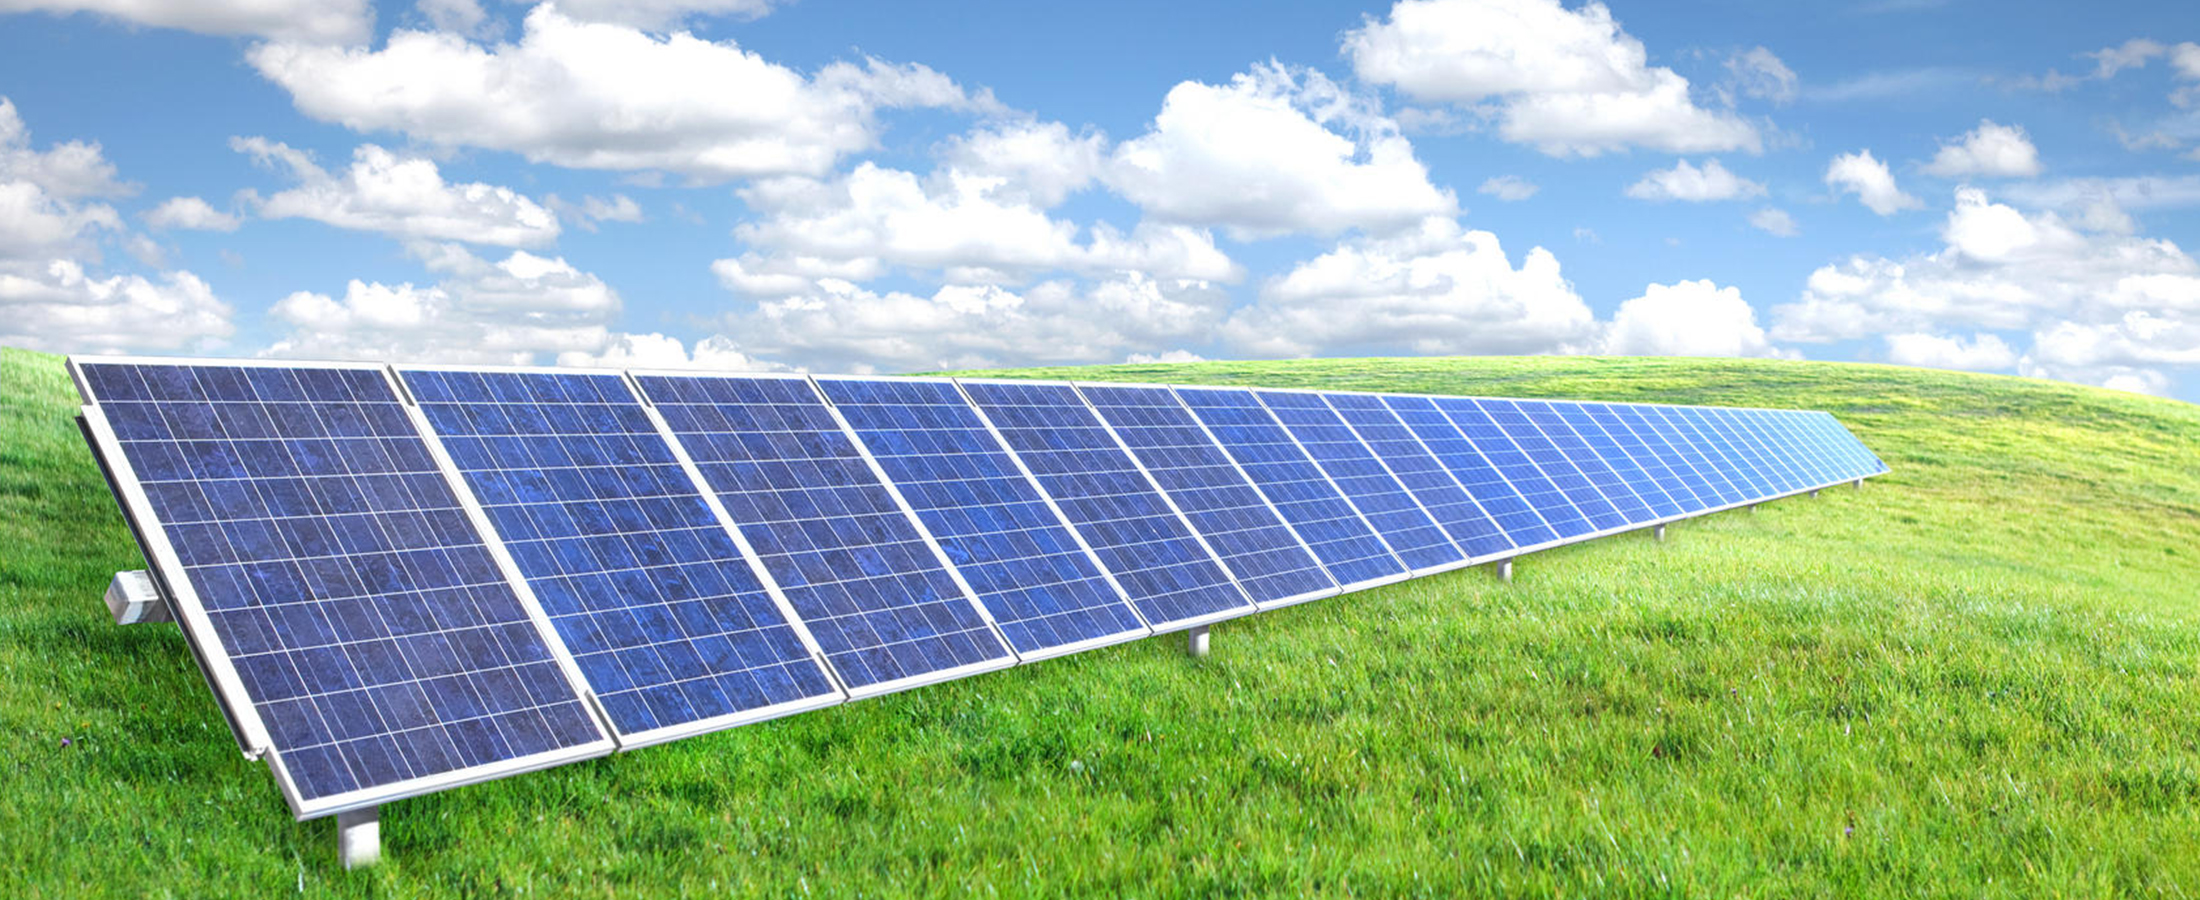 moduli-fotovoltaici-europei-italsol-energie-rinnovabili